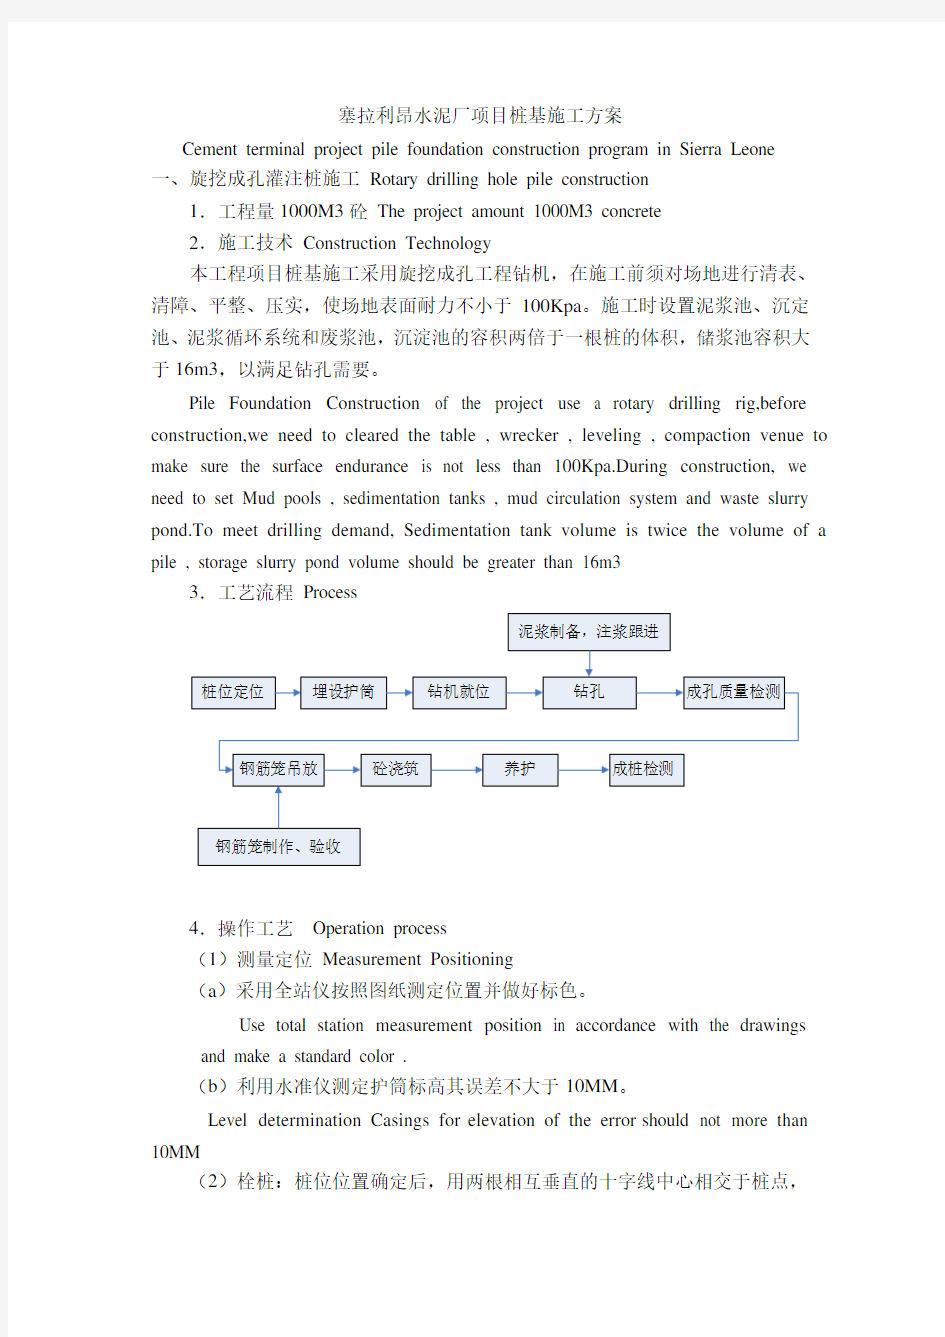 桩基施工方案-中文英文对照